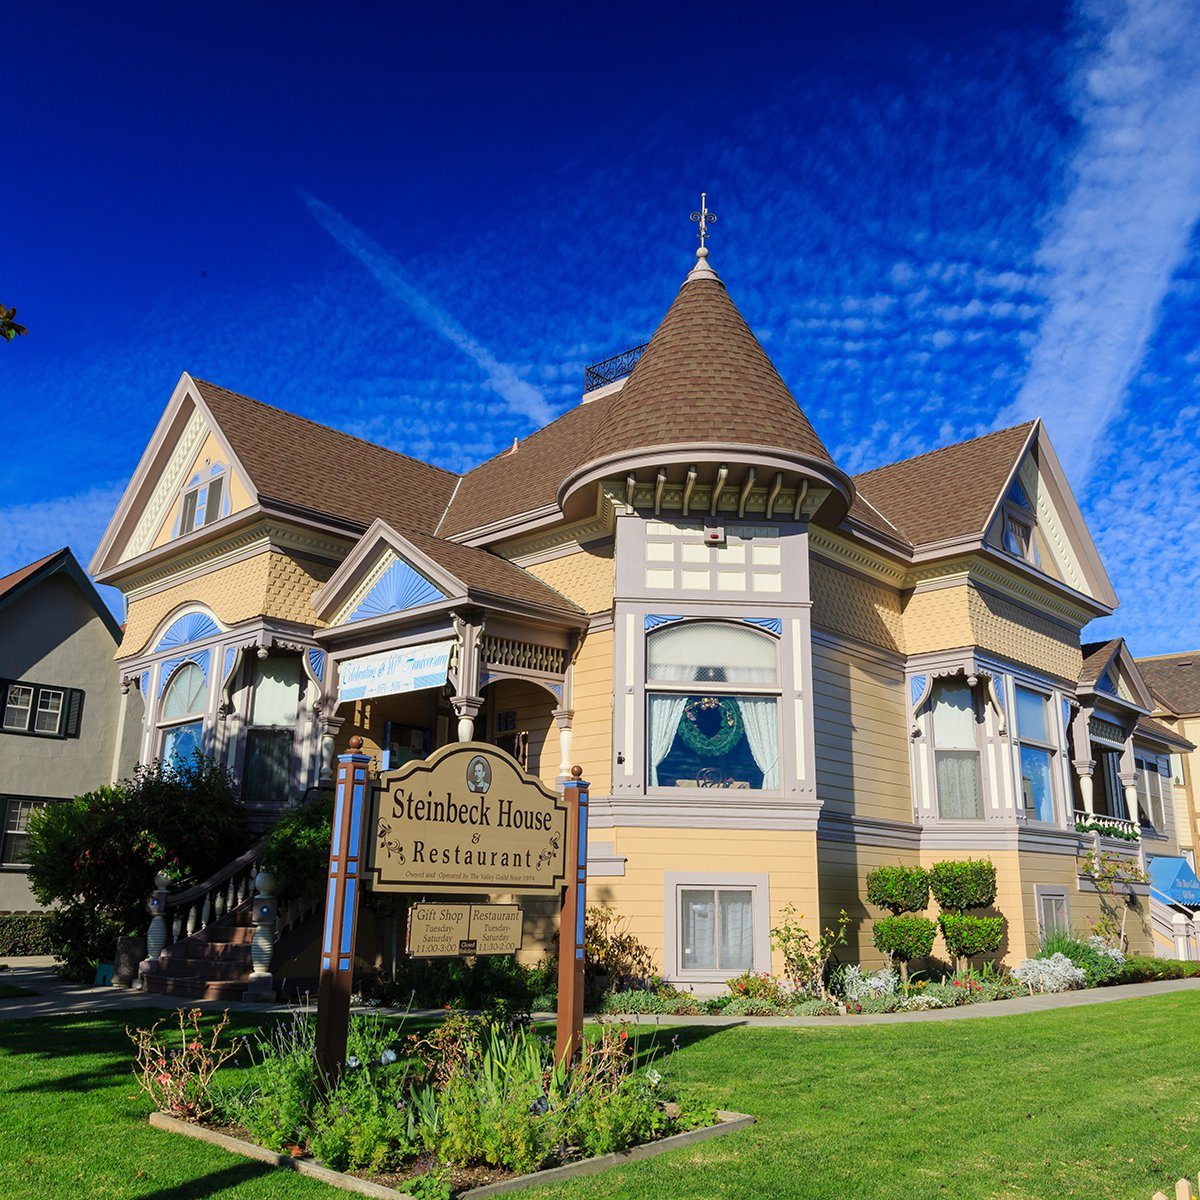 Salinas, NOV 28: The beautiful Steinbeck House on NOV 28, 2014 at Salinas, California